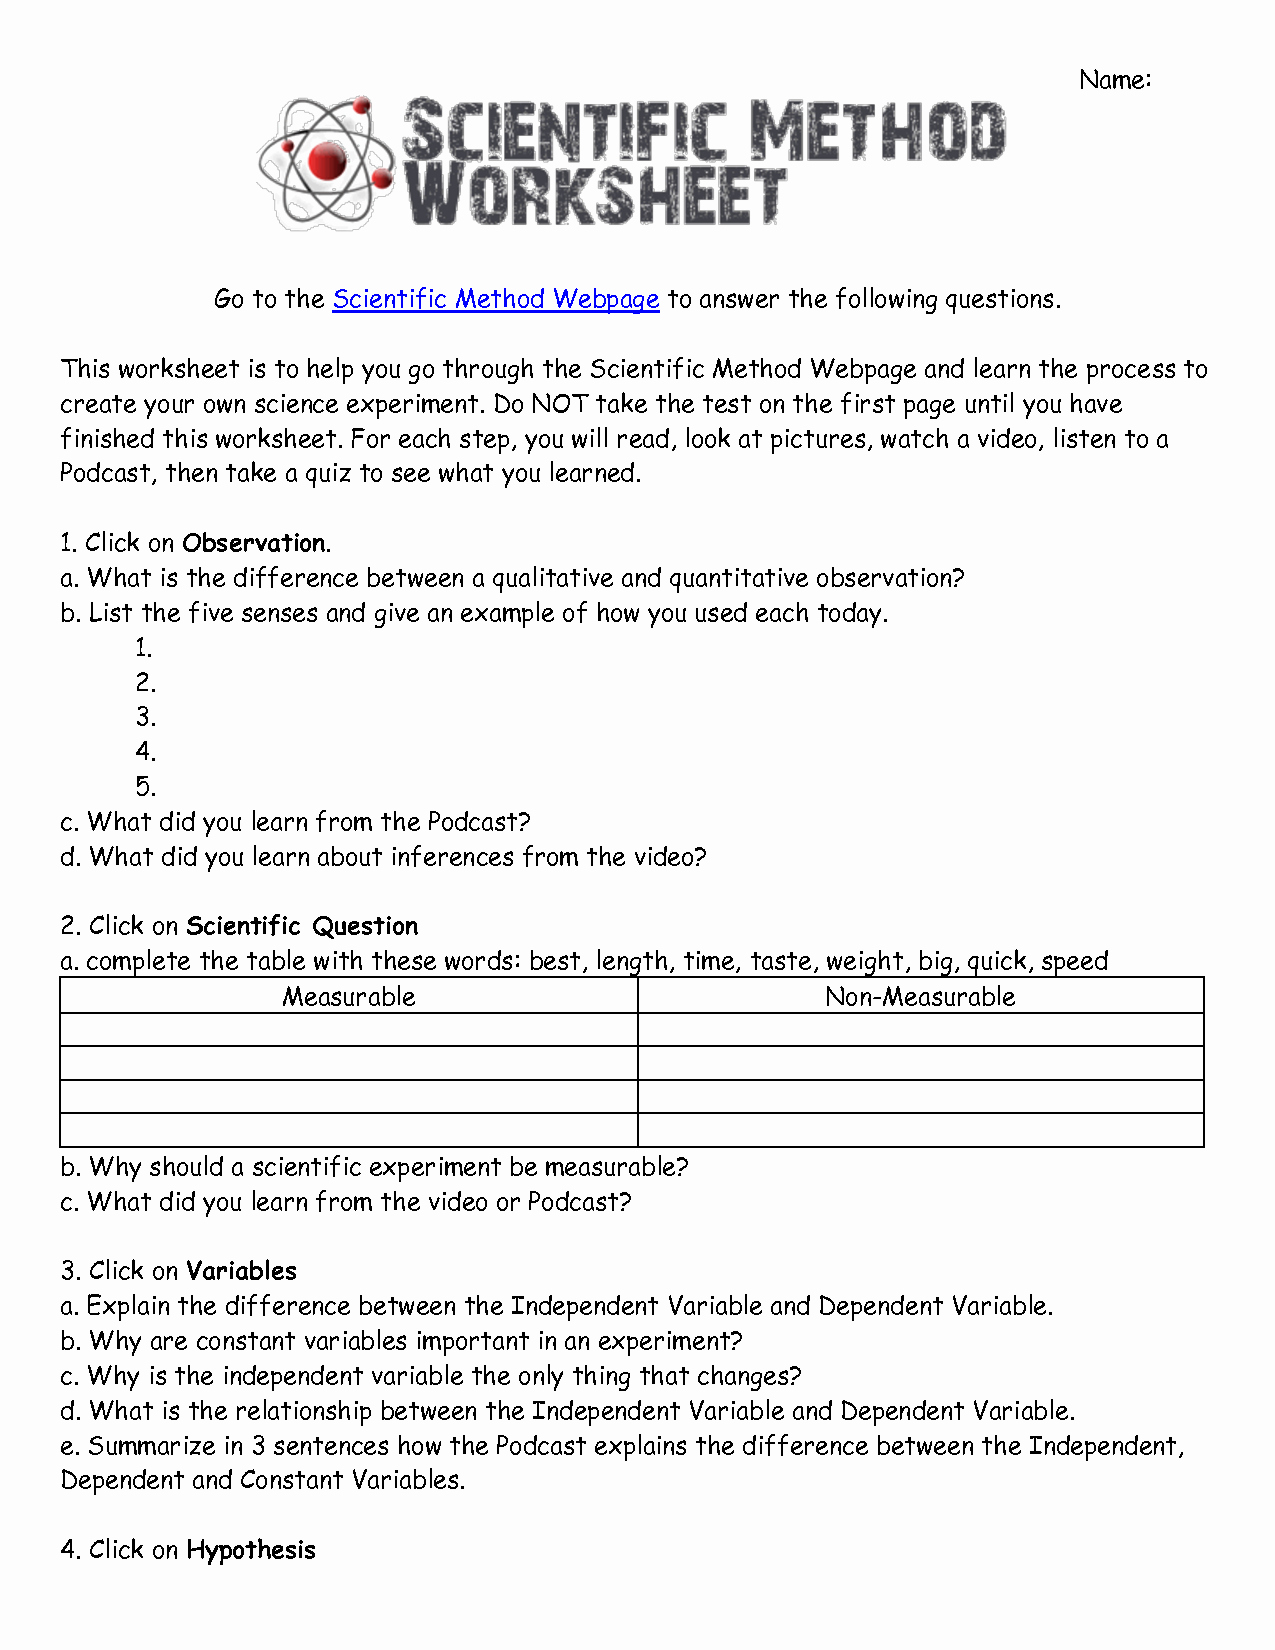 Scientific Method Worksheet Answers Luxury 52 Scientific Method Worksheet Answers Experimental